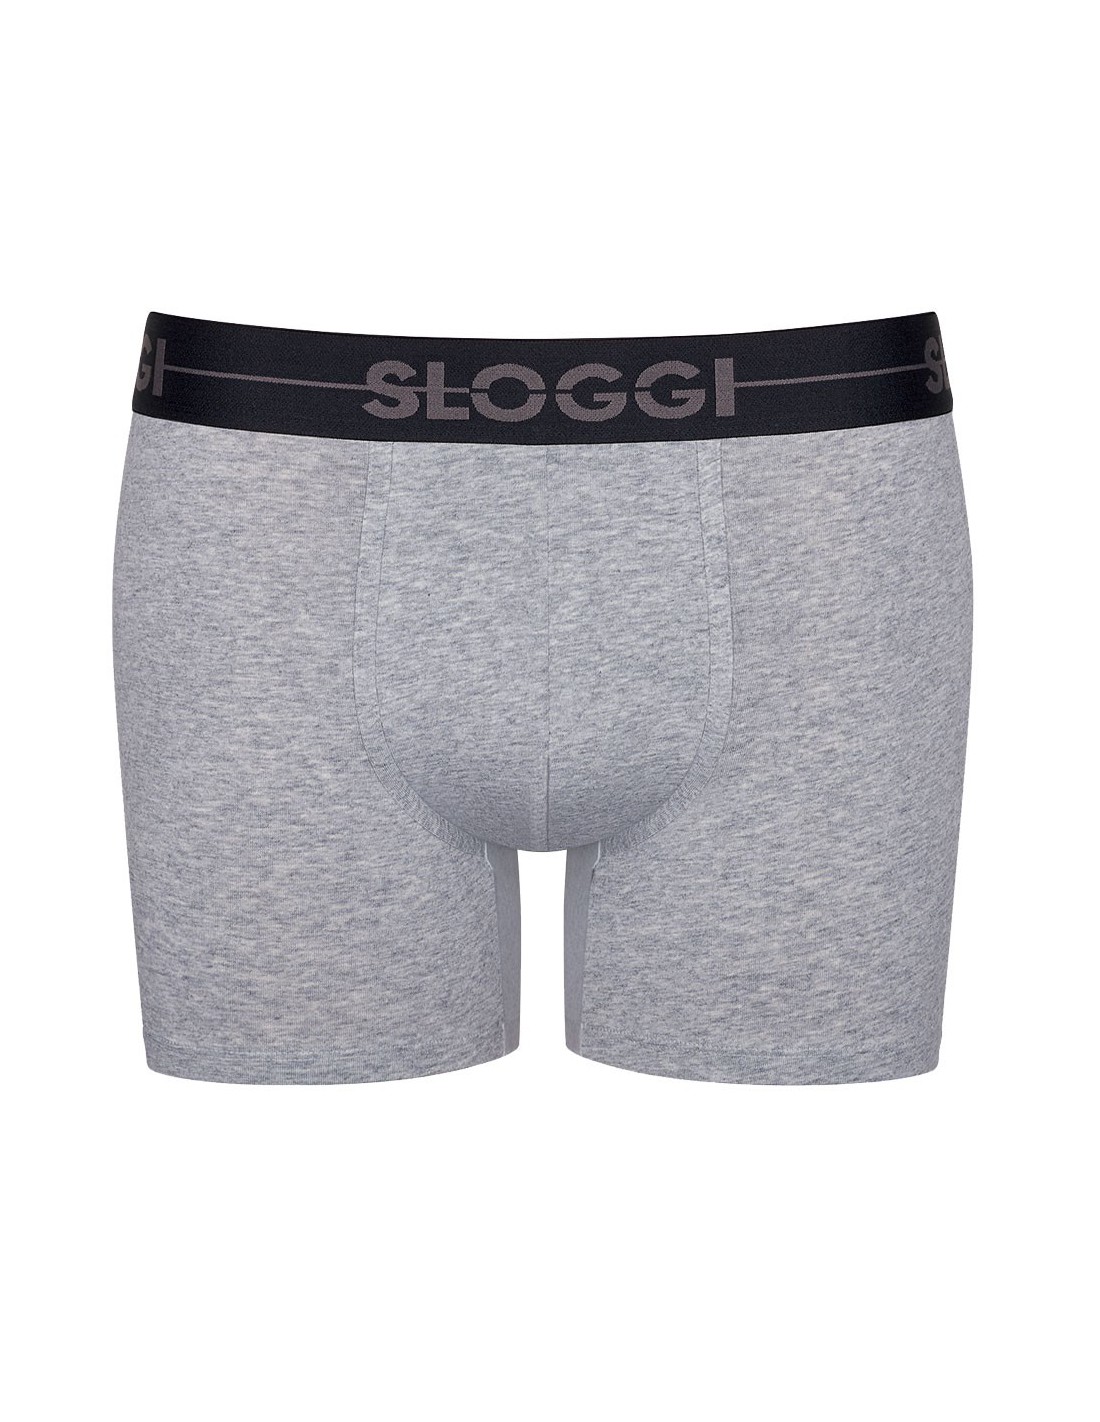 5 6 M Sloggi Men Basic Shorts Boxershorts Gr L schwarz weiß navy grau NEU 